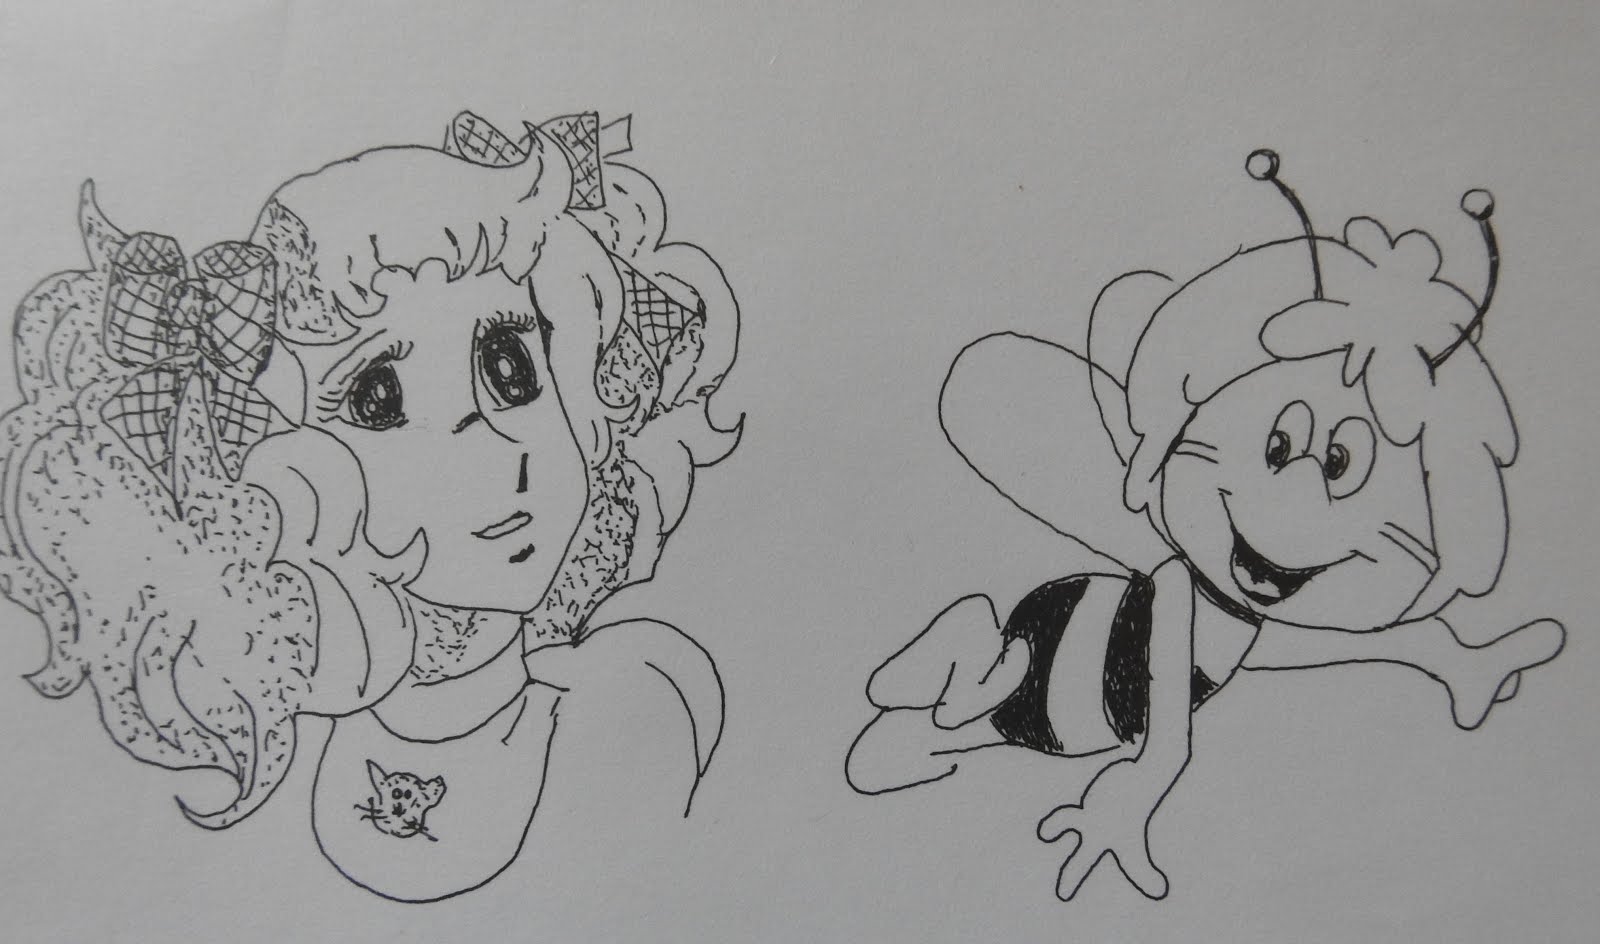 Candy et Maya l'abeille (clic droit pourafficher et télécharge l'image)